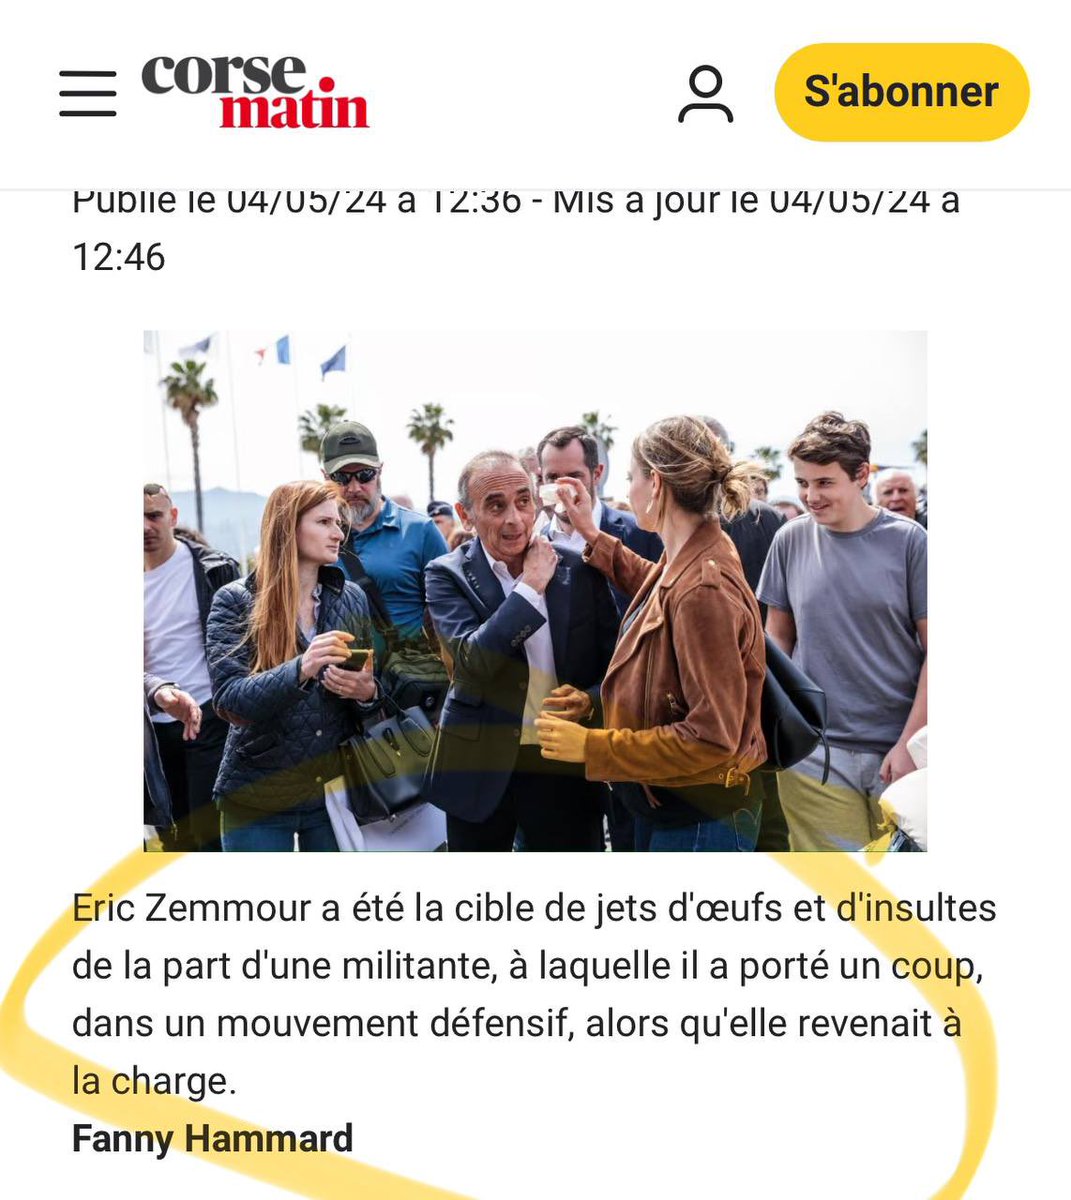 Corse Matin donne la réalité des faits : Éric Zemmour s’est défendu face à une AGRESSION !

#JeSoutiensZemmour